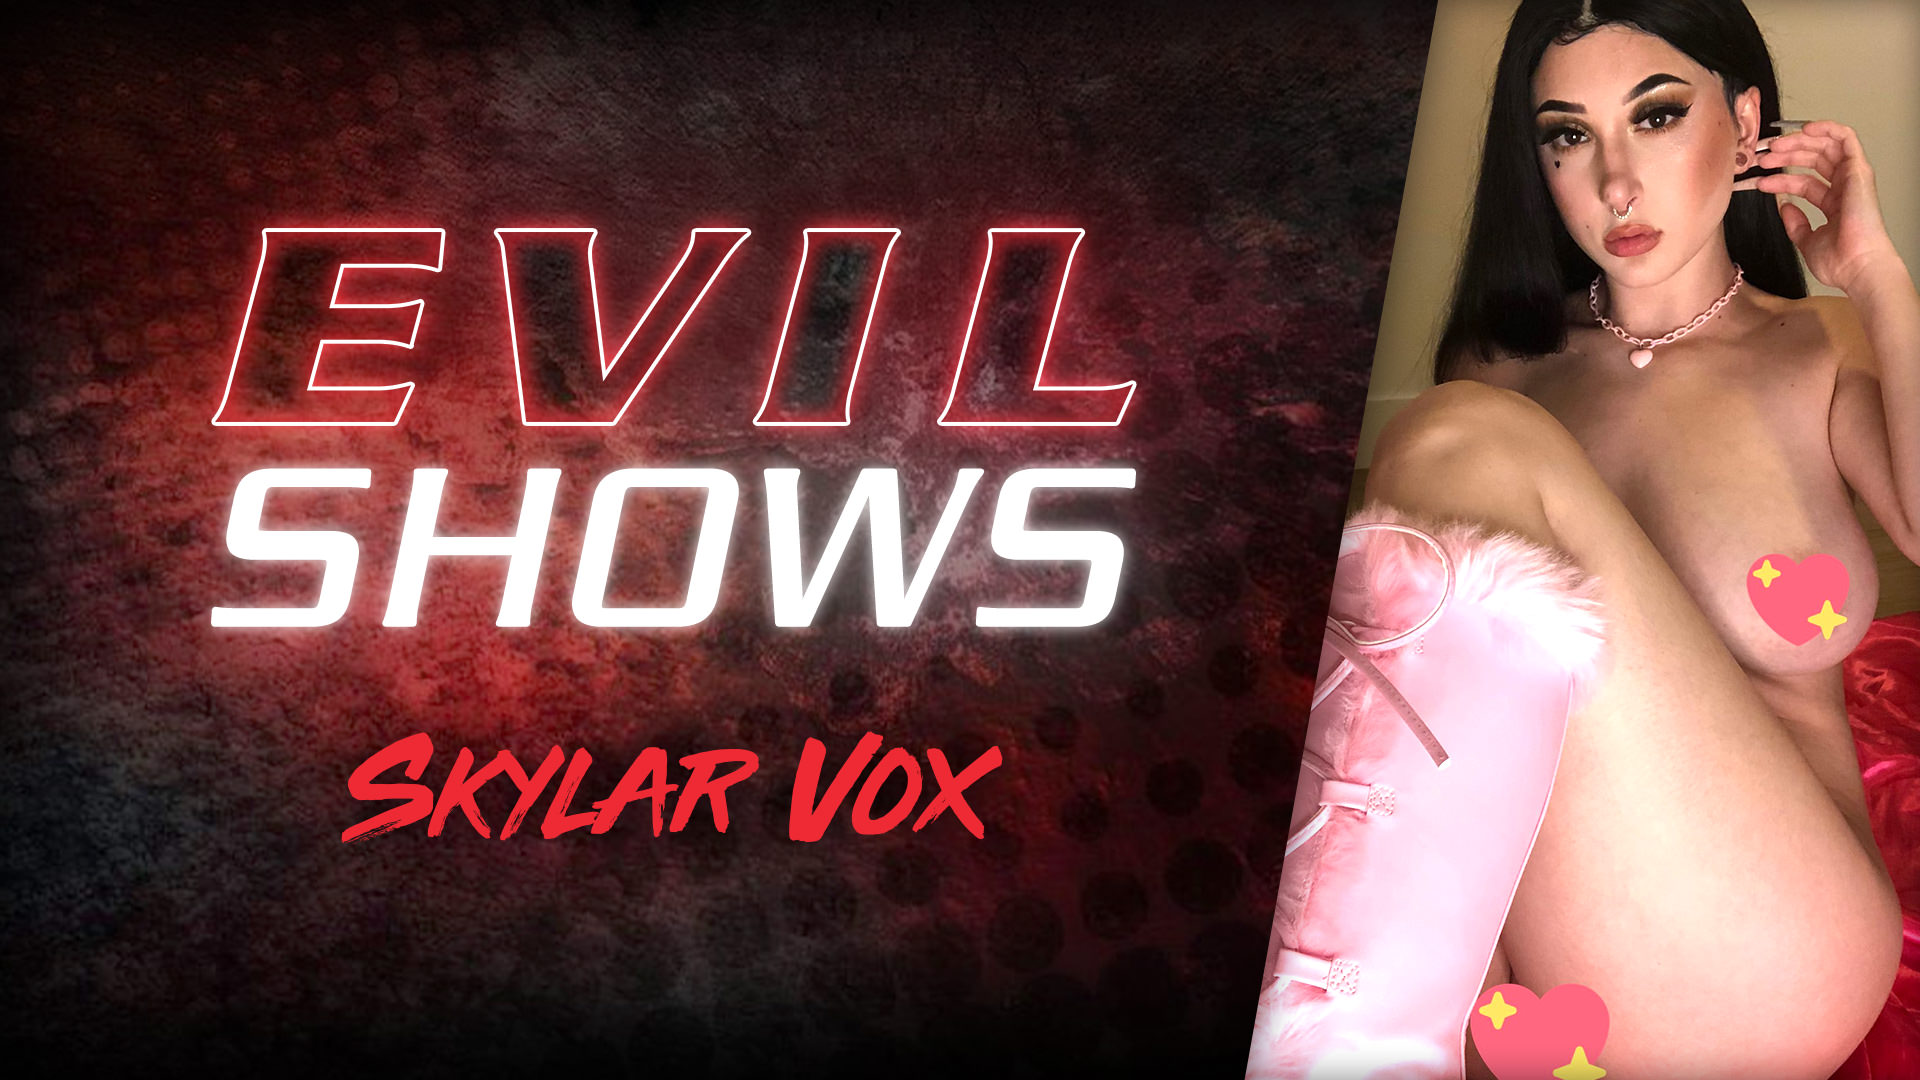 Evil Shows - Skylar Vox Scène 1